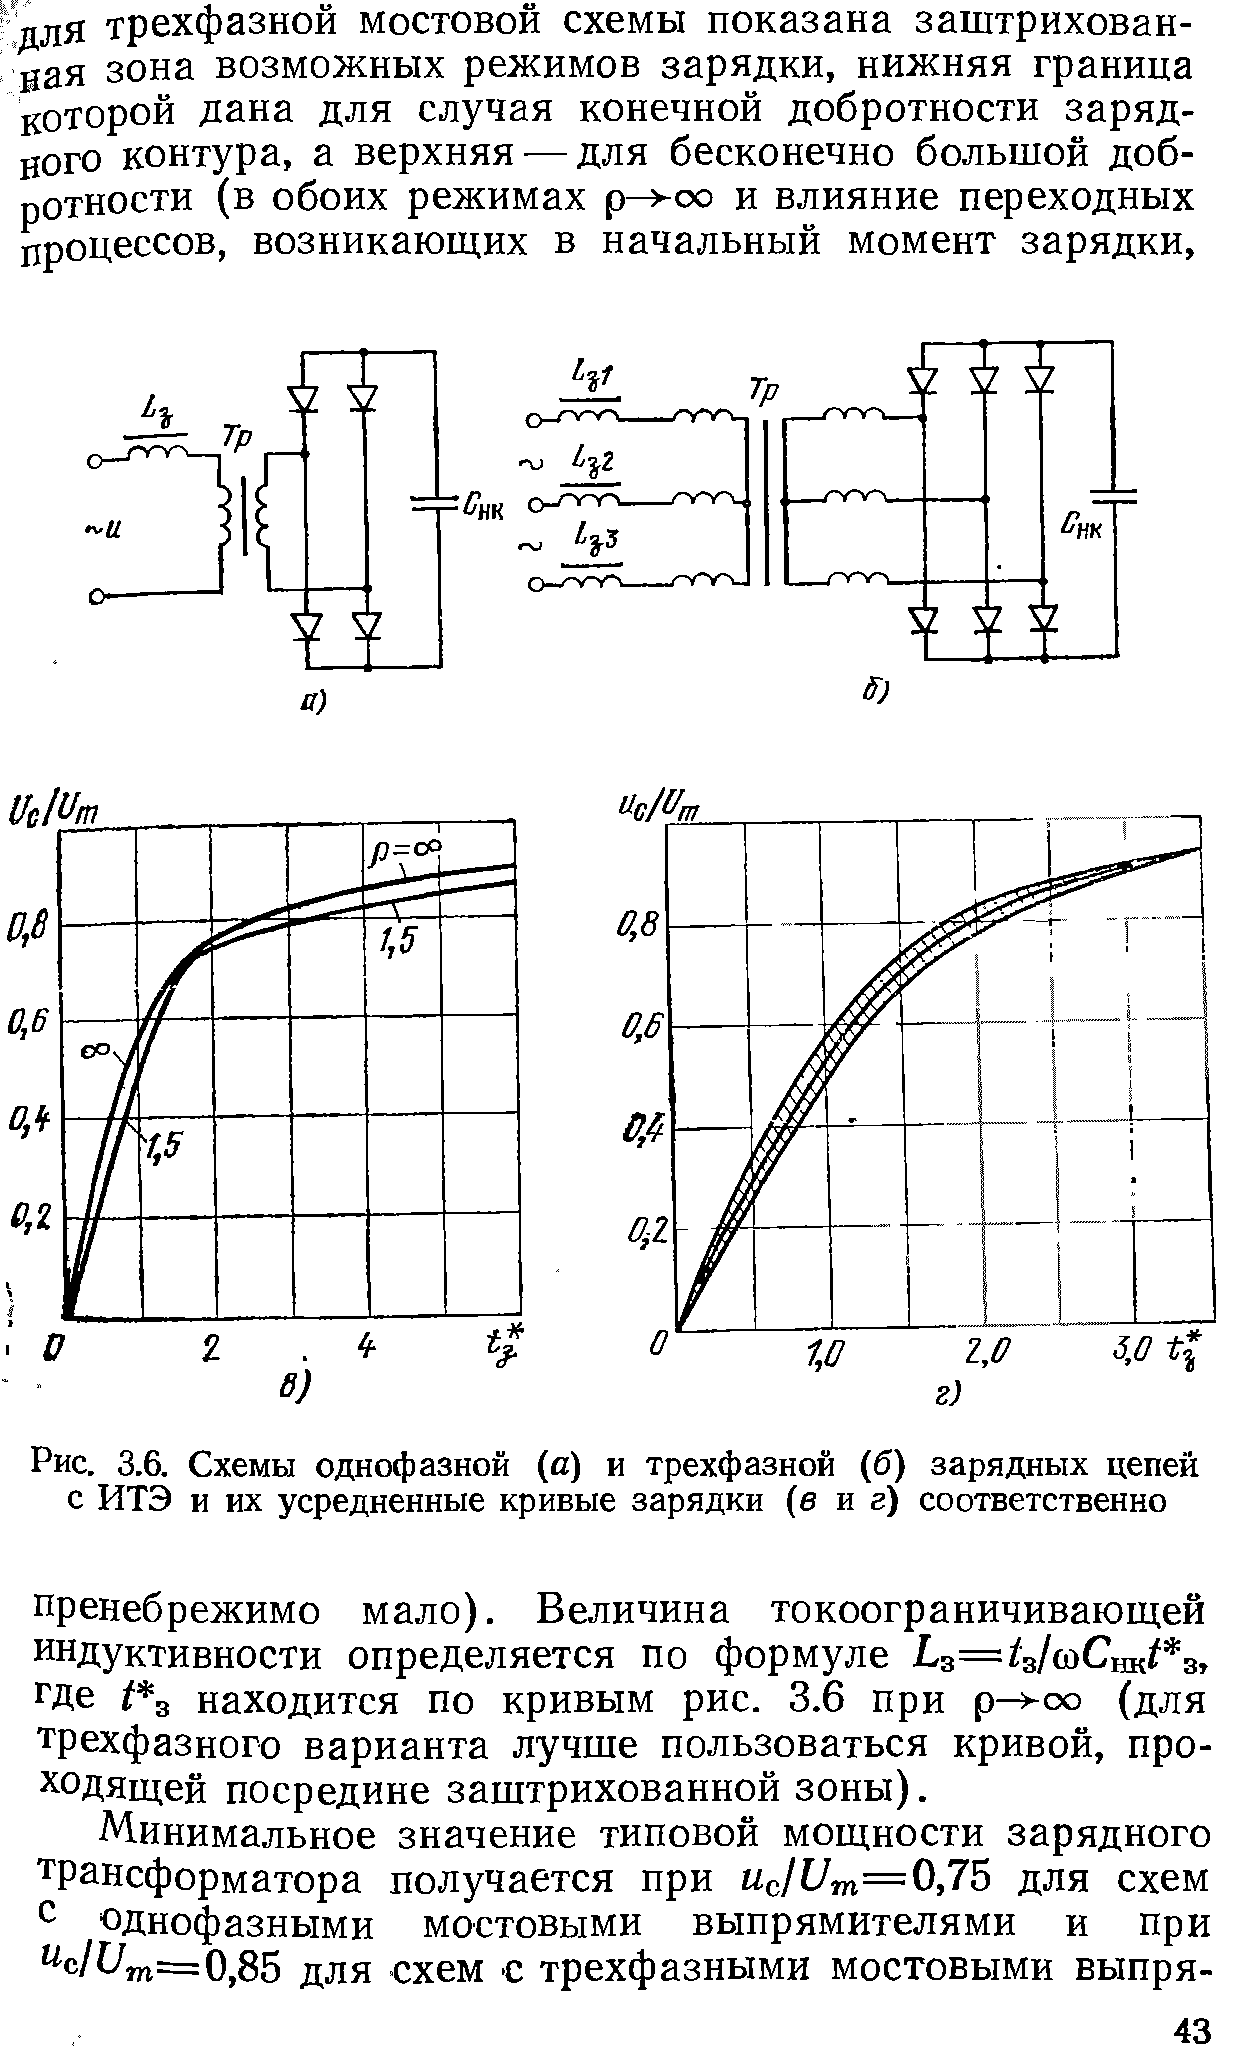 Рис. 3.6. Схемы однофазной (и) и трехфазной (б) зарядных цепей с ИТЭ и их усредненные кривые зарядки (в и г) соответственно
